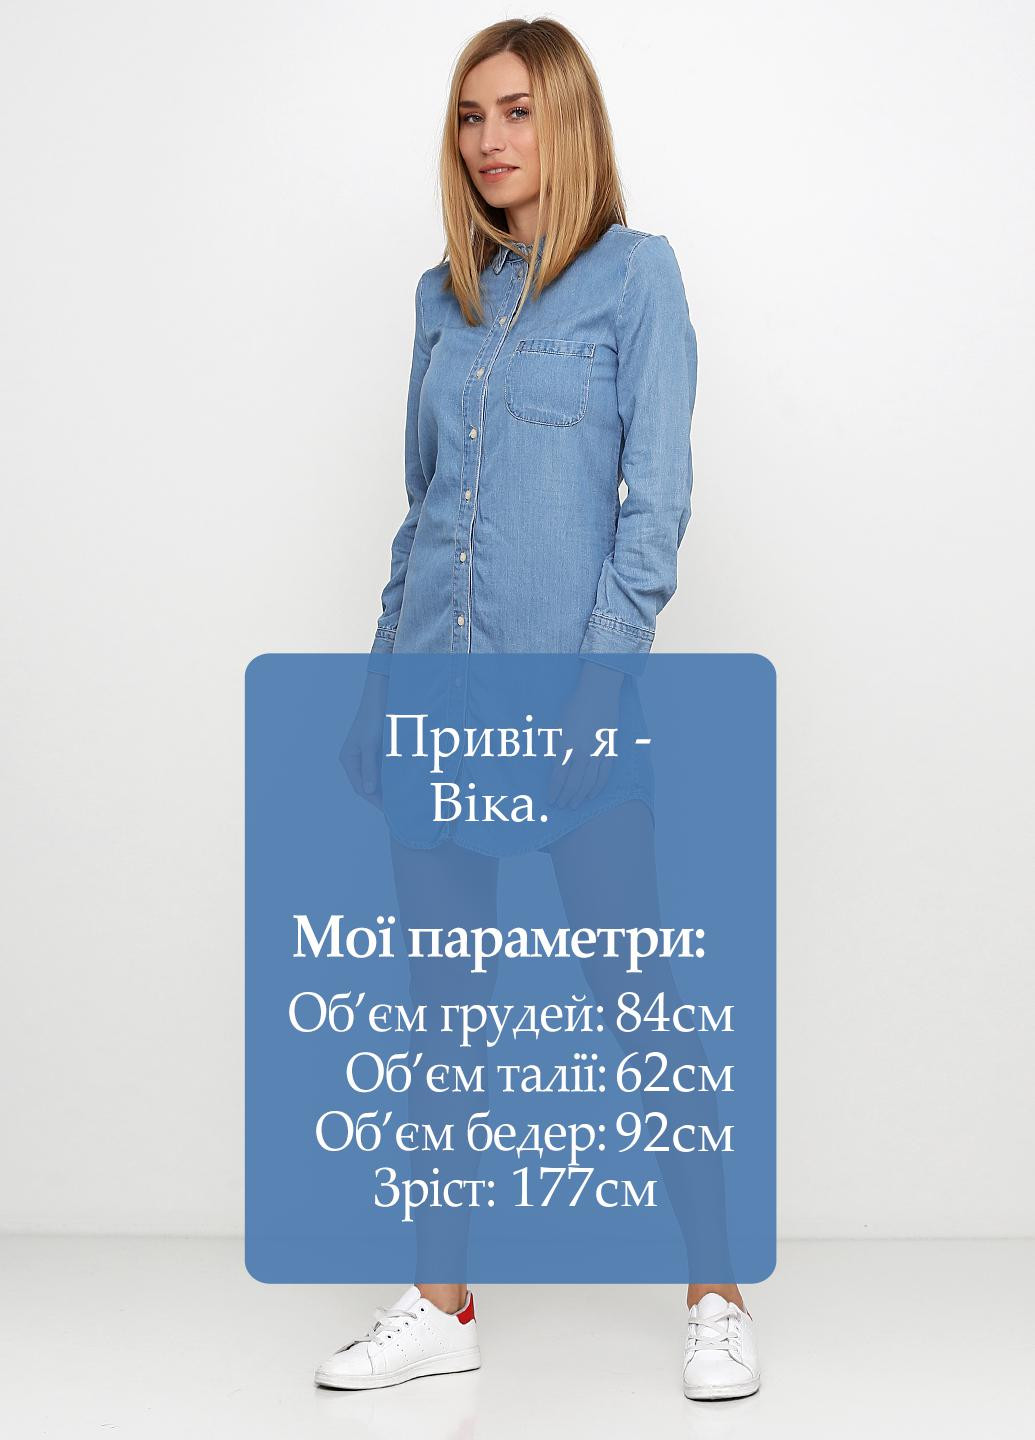 Голубое джинсовое платье рубашка H&M однотонное